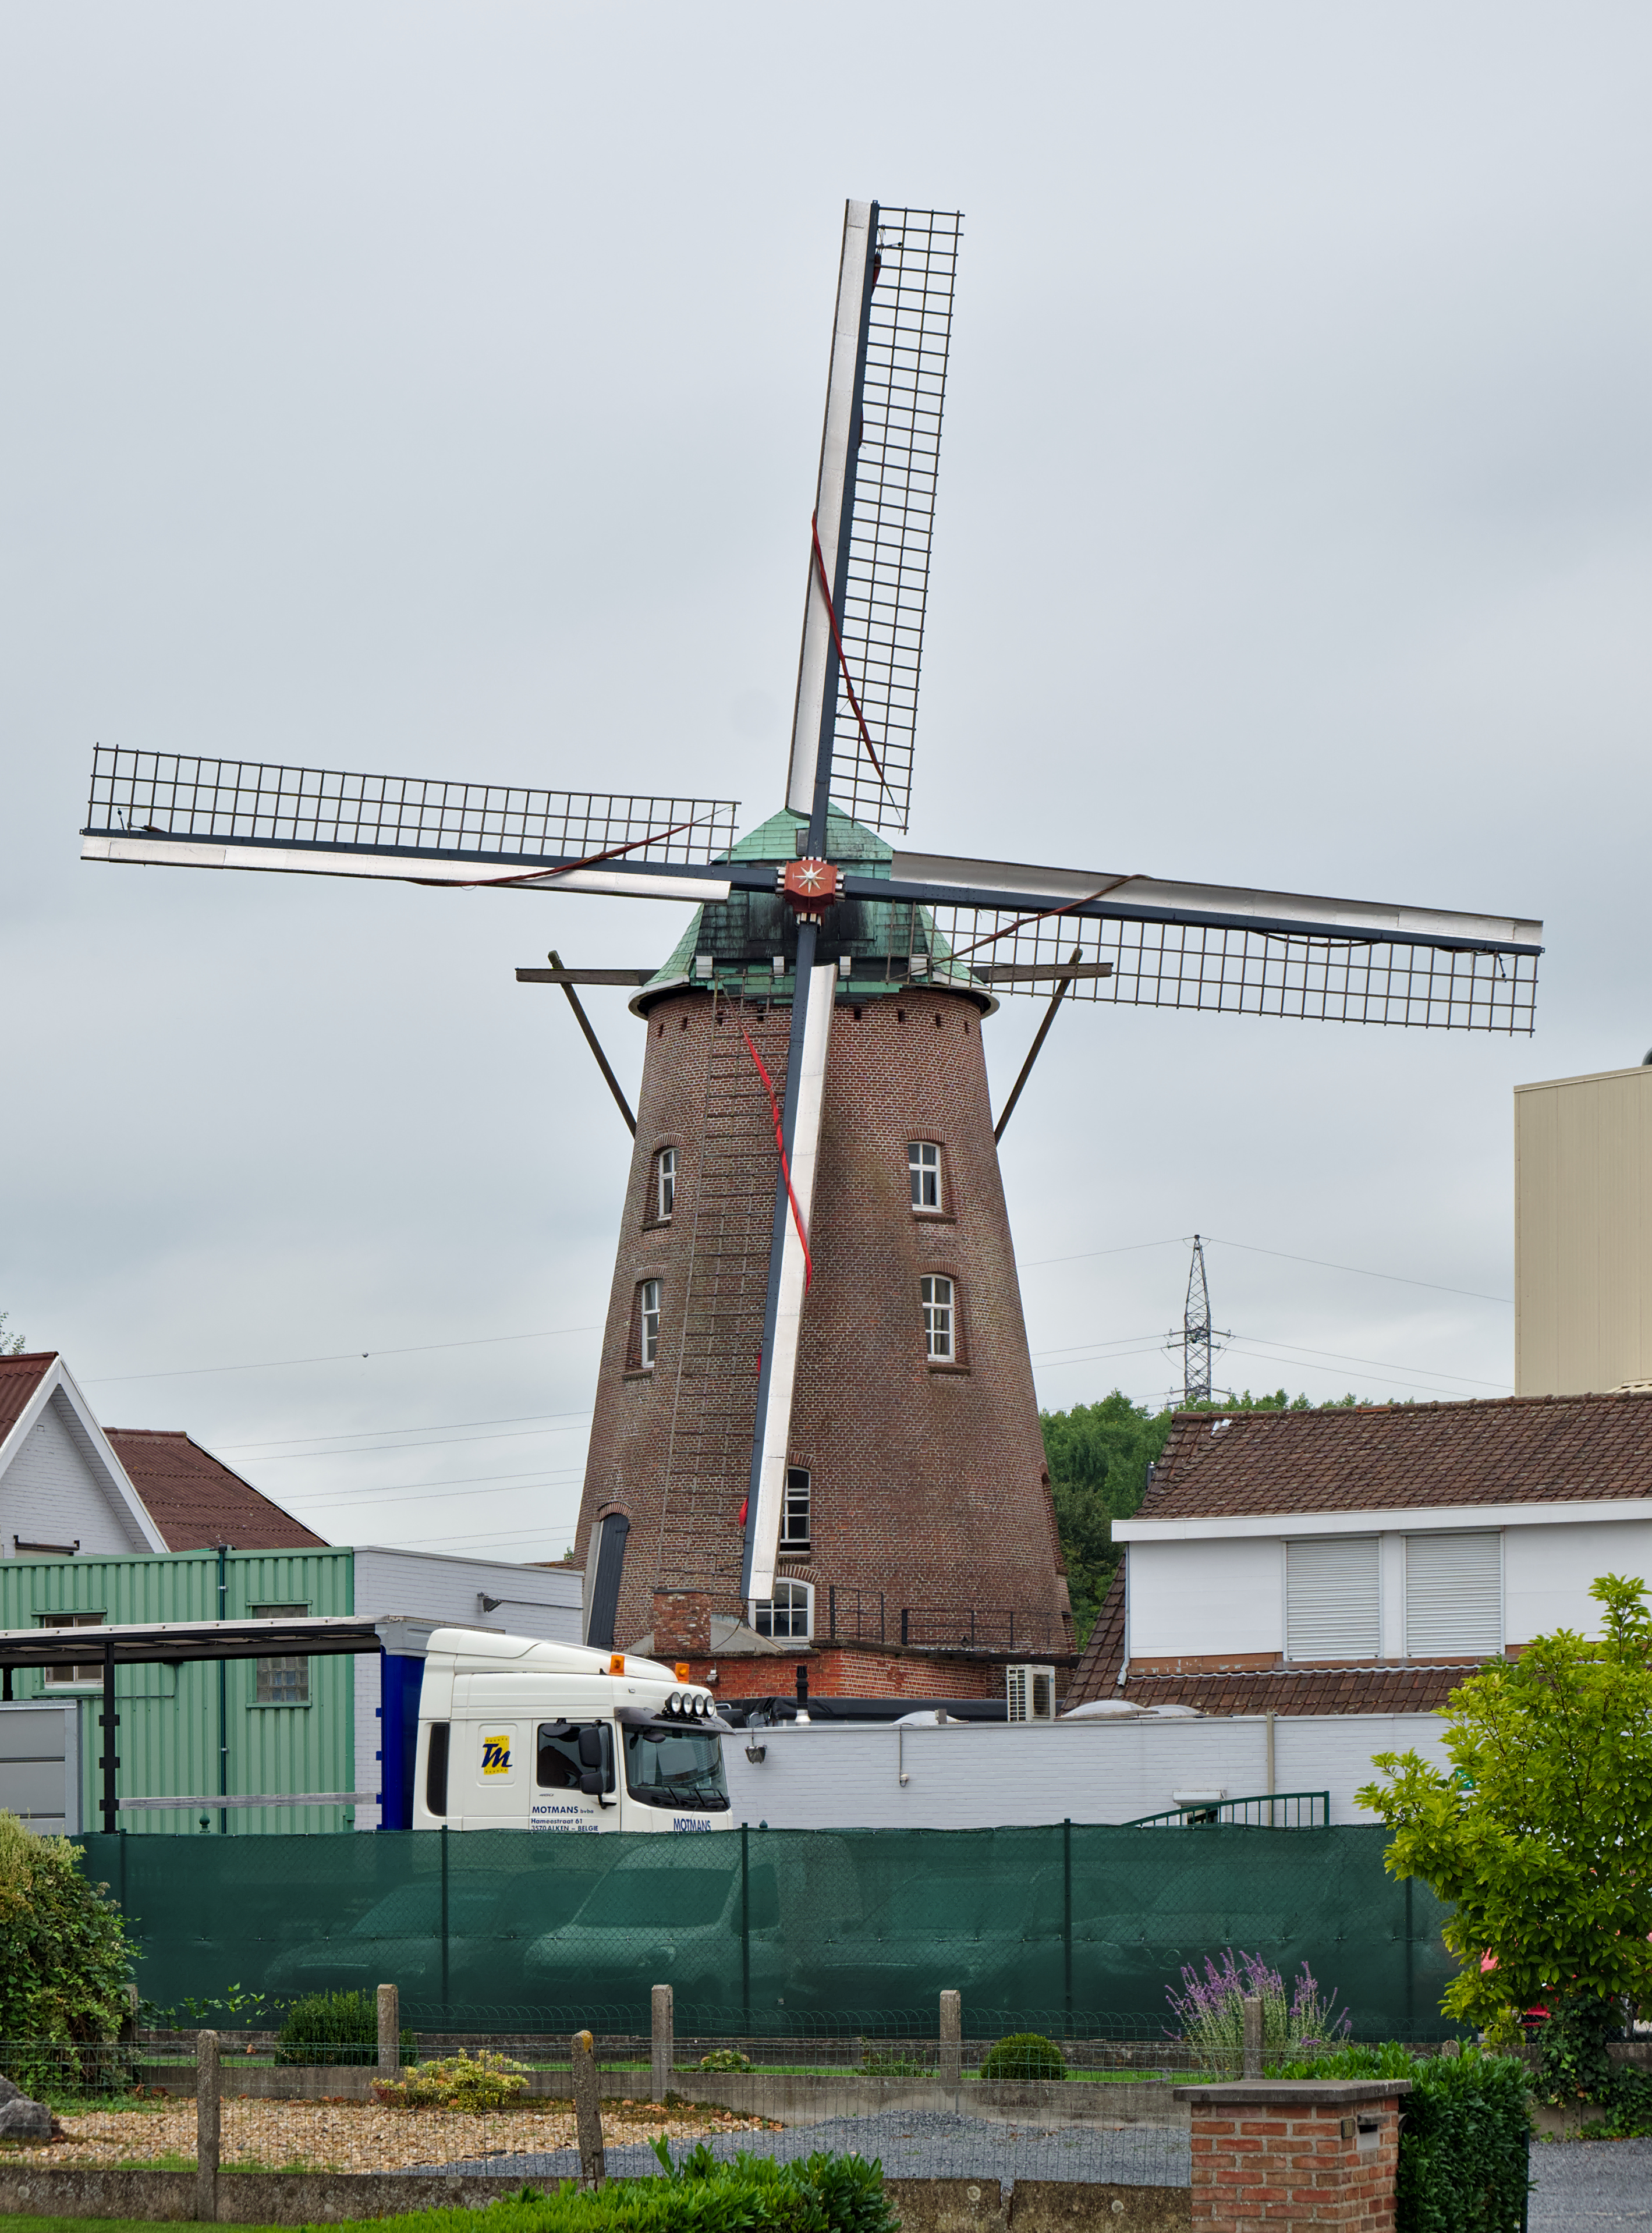 Kazandmolen in Roeselare (DSCF0018)